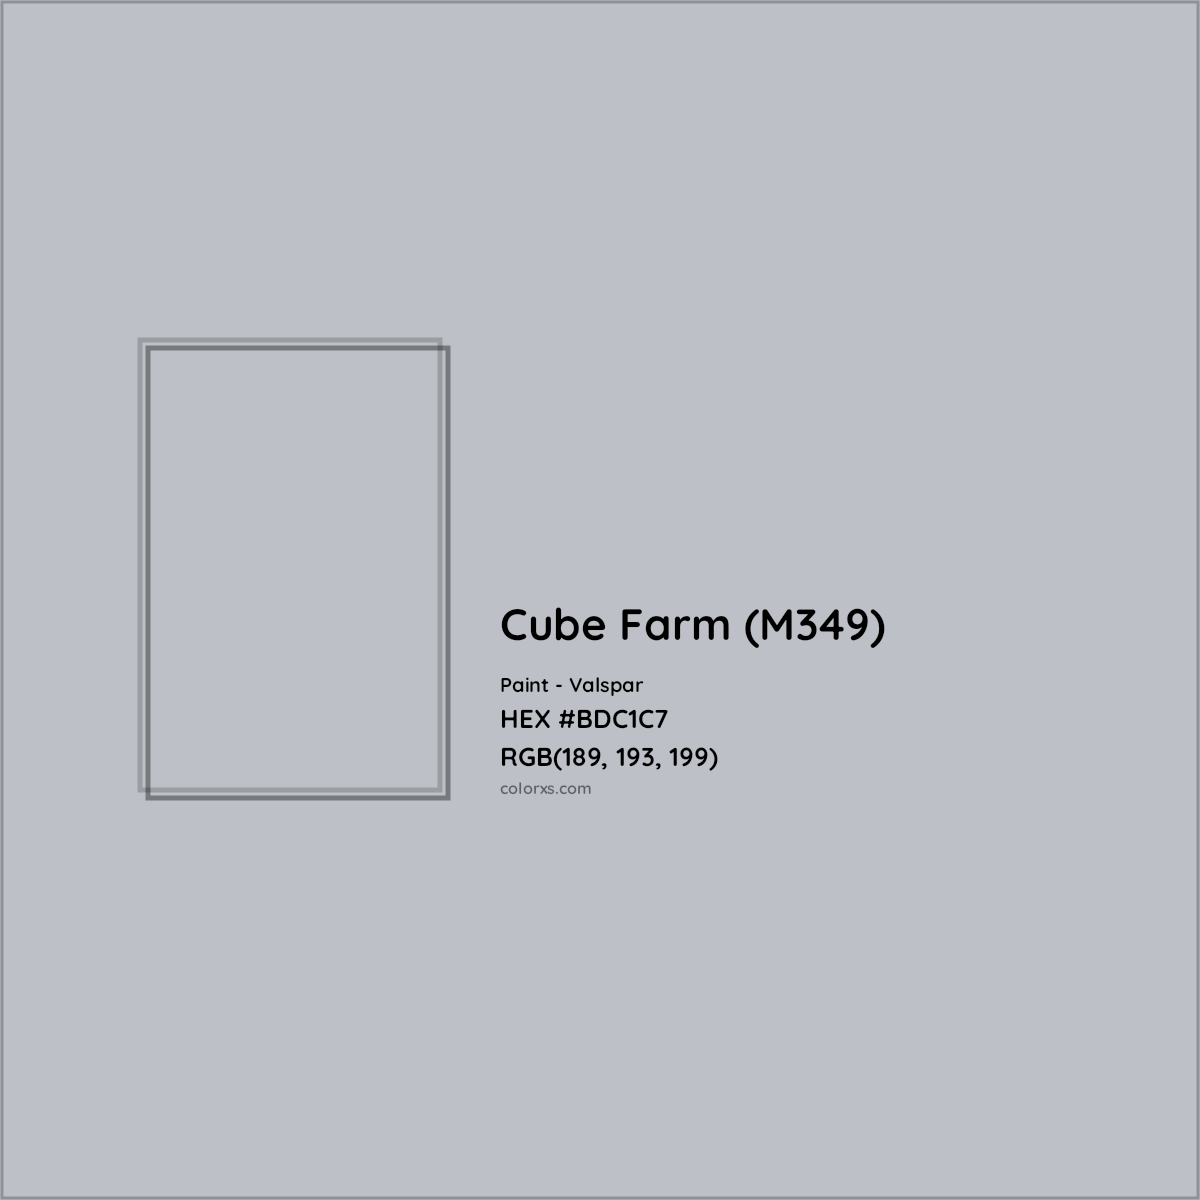 HEX #BDC1C7 Cube Farm (M349) Paint Valspar - Color Code